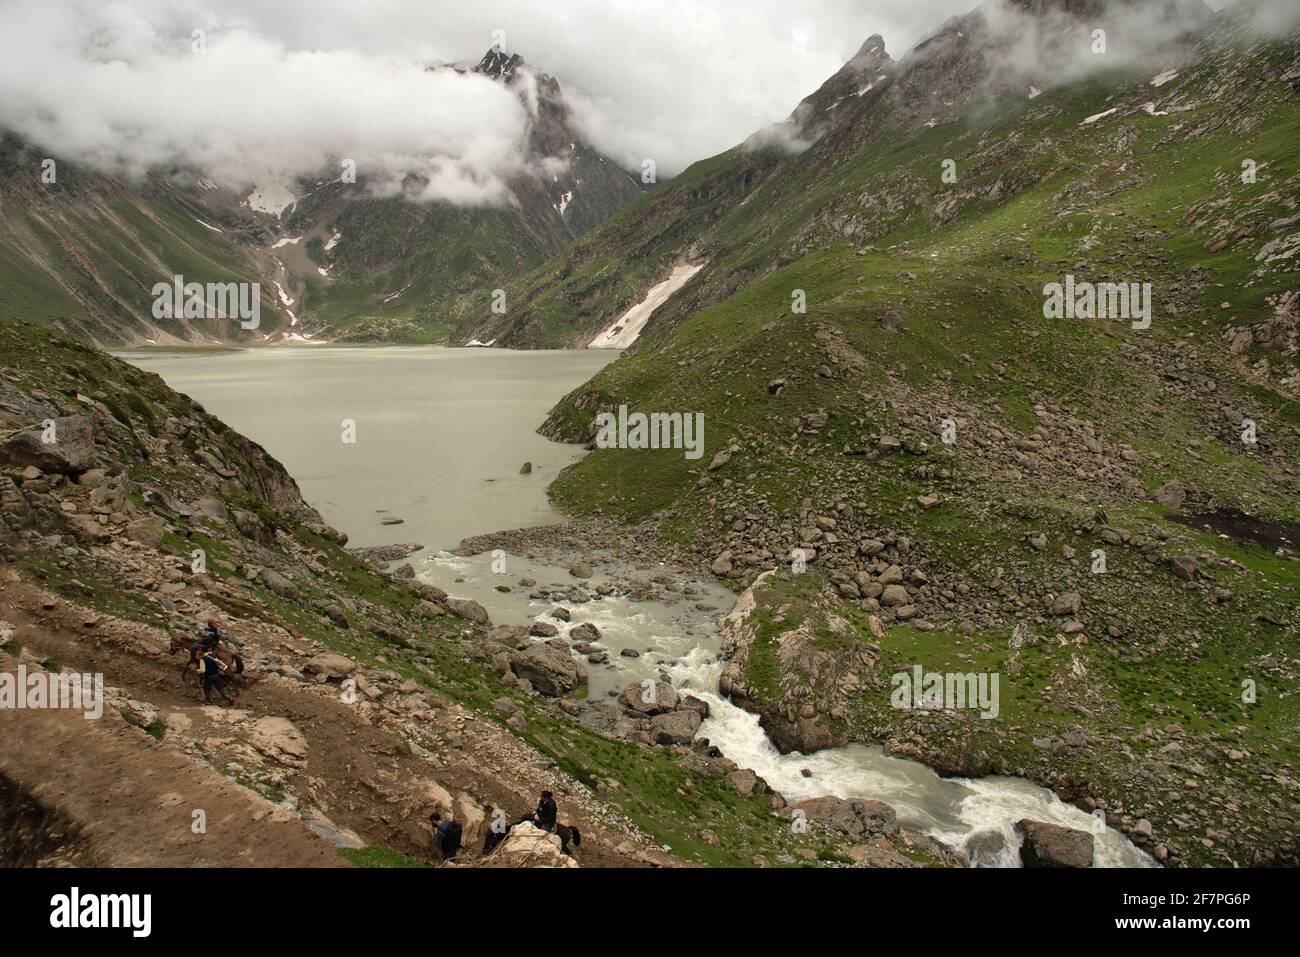 Mountains and lake at Tisu Top, Jammu and Kashmir, India Stock Photo